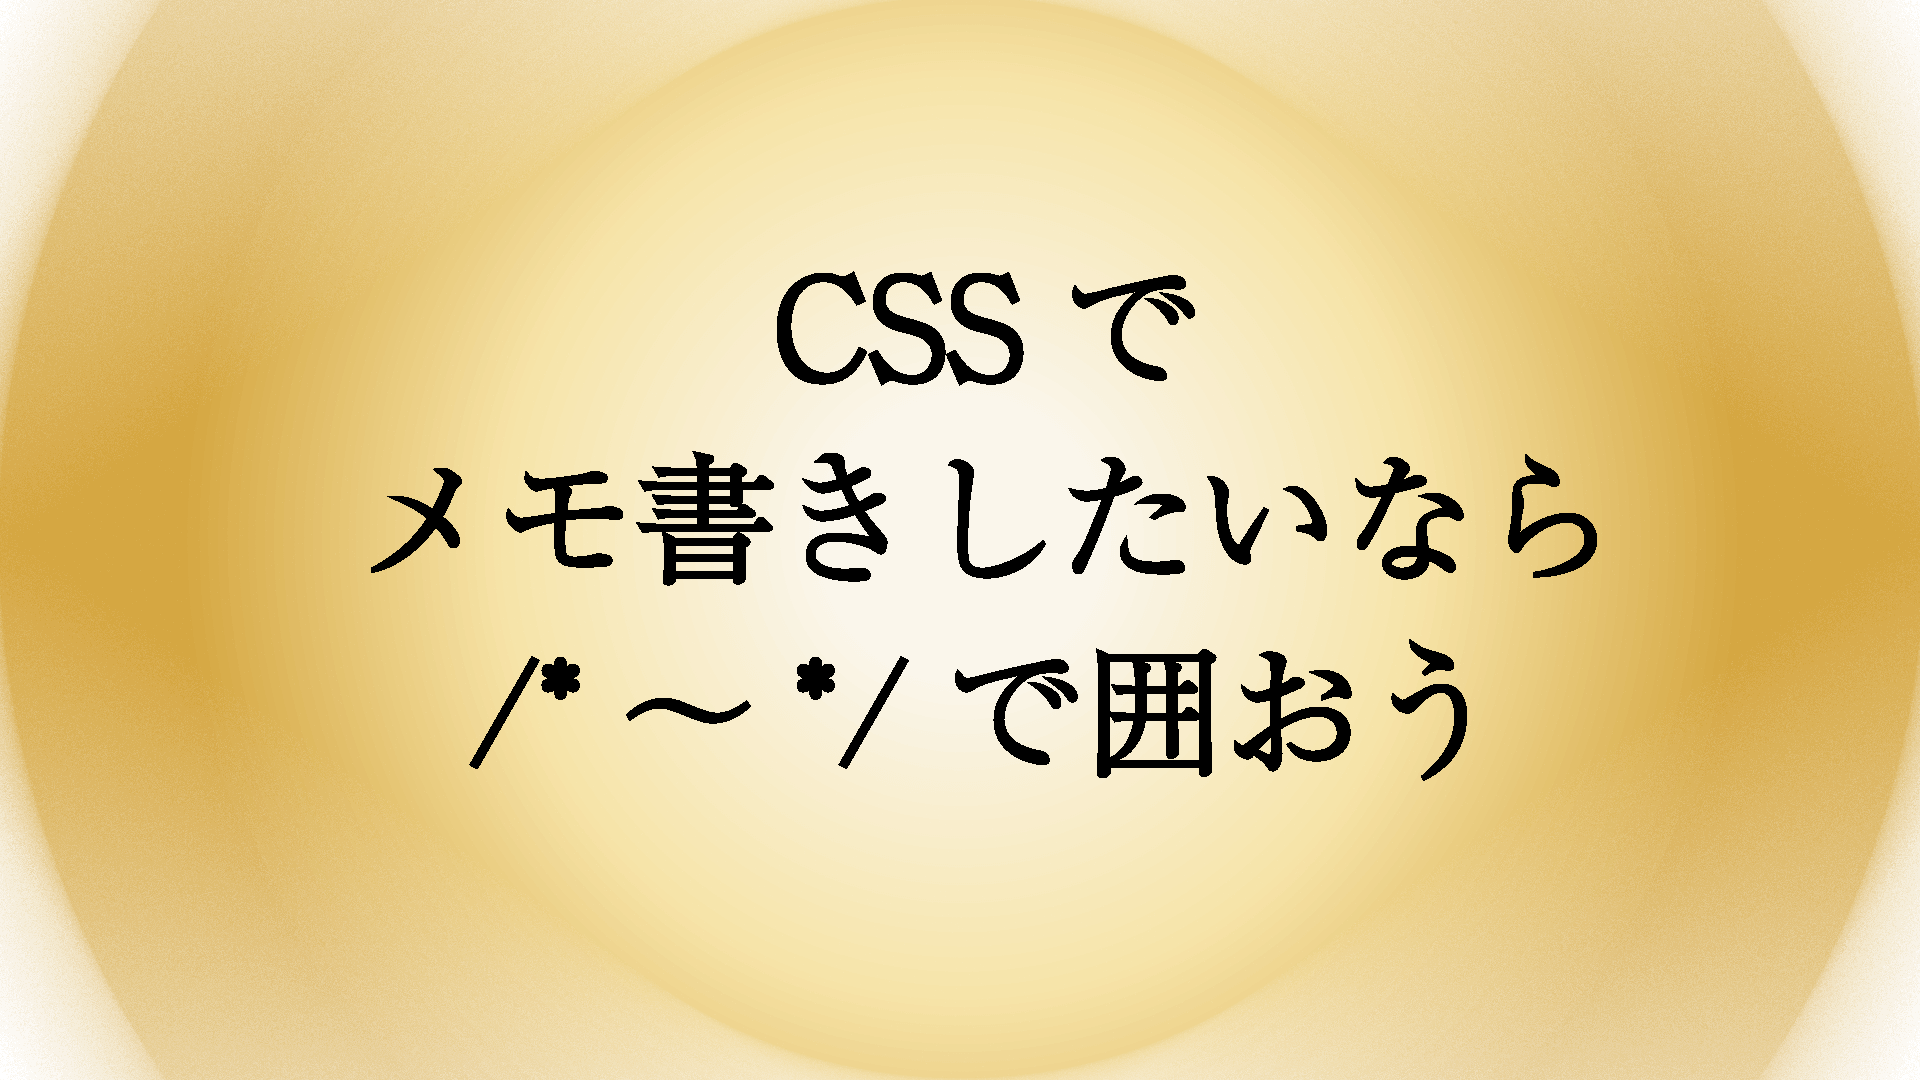 CSSでメモ書きを残したい（コメントアウト）場合はどうやって書く？